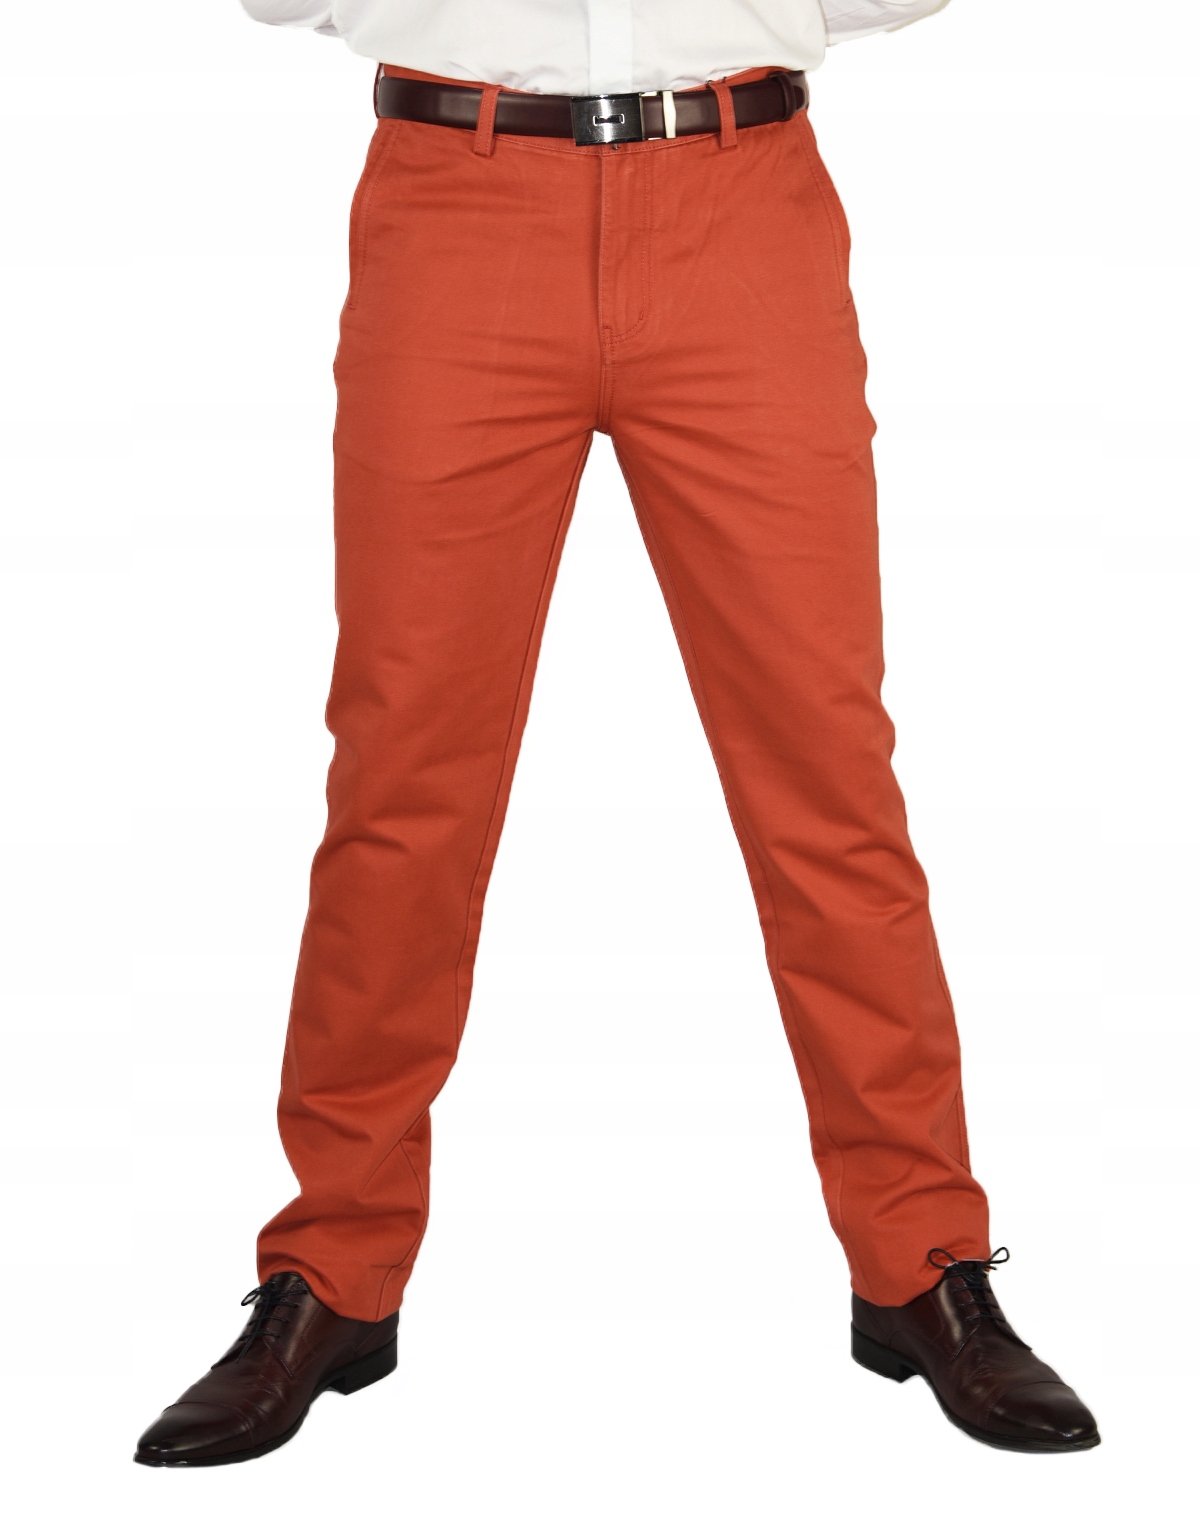 Pánske chino nohavice oranžové HIT CENA W40 L32